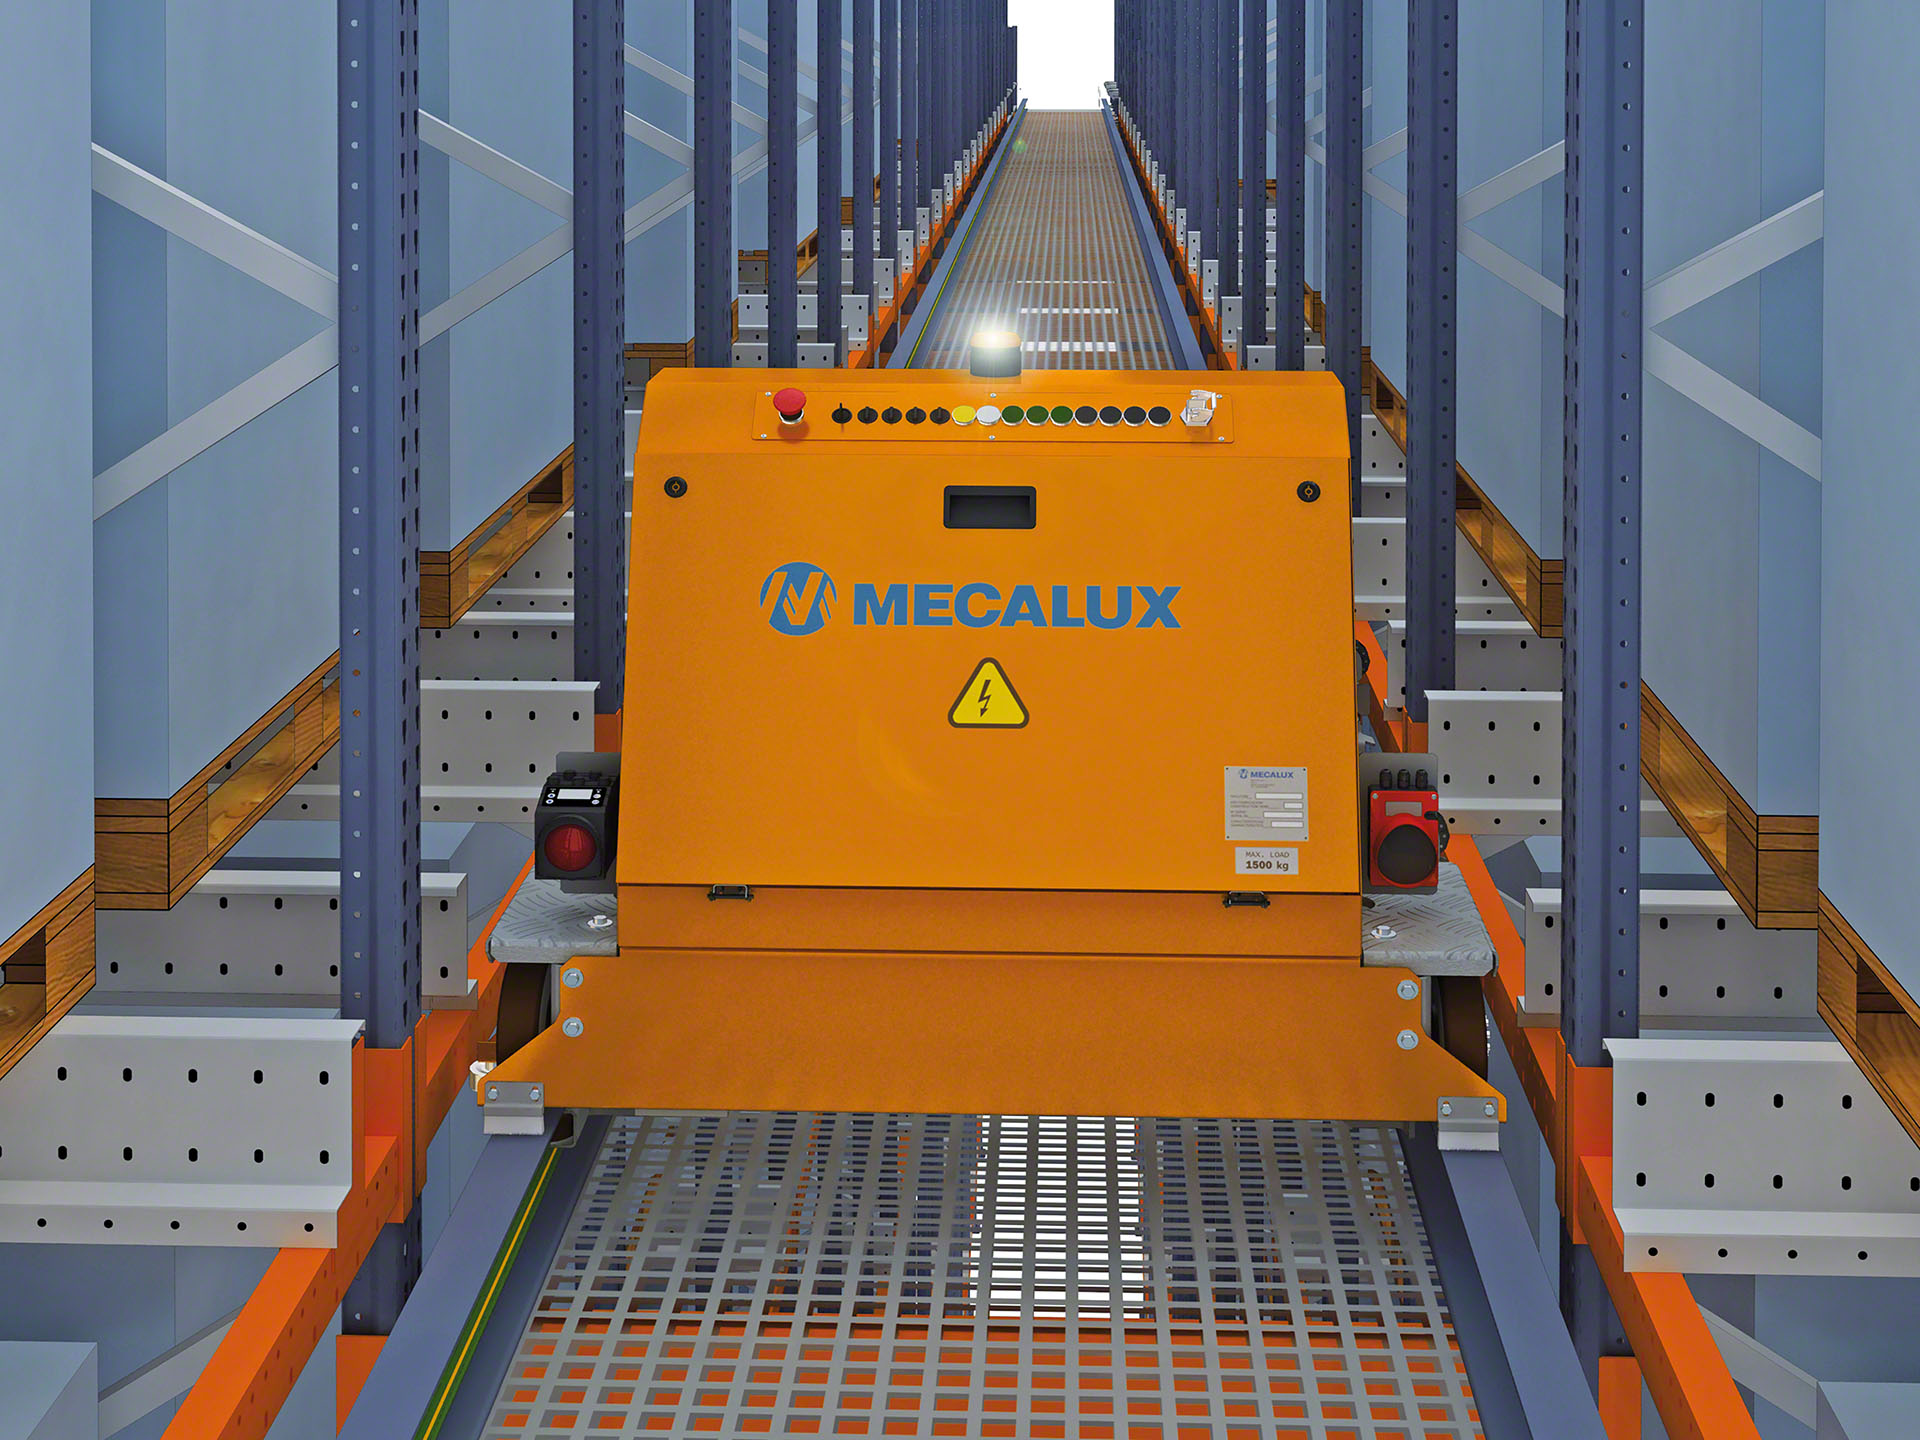 La navette de transfert est chargée d'introduire la navette automatisée dans chacune des allées de stockage